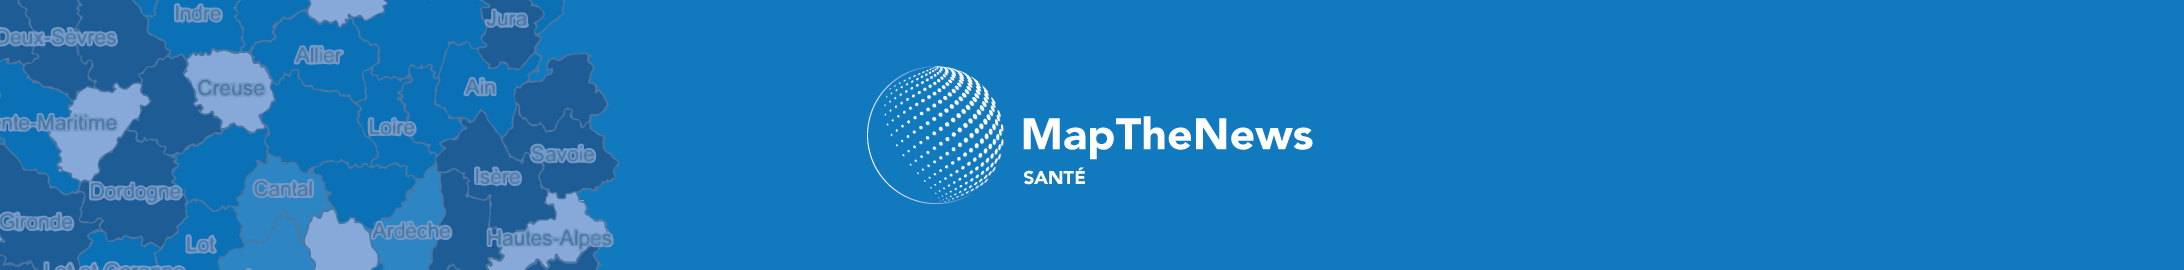 MapTheNews Santé